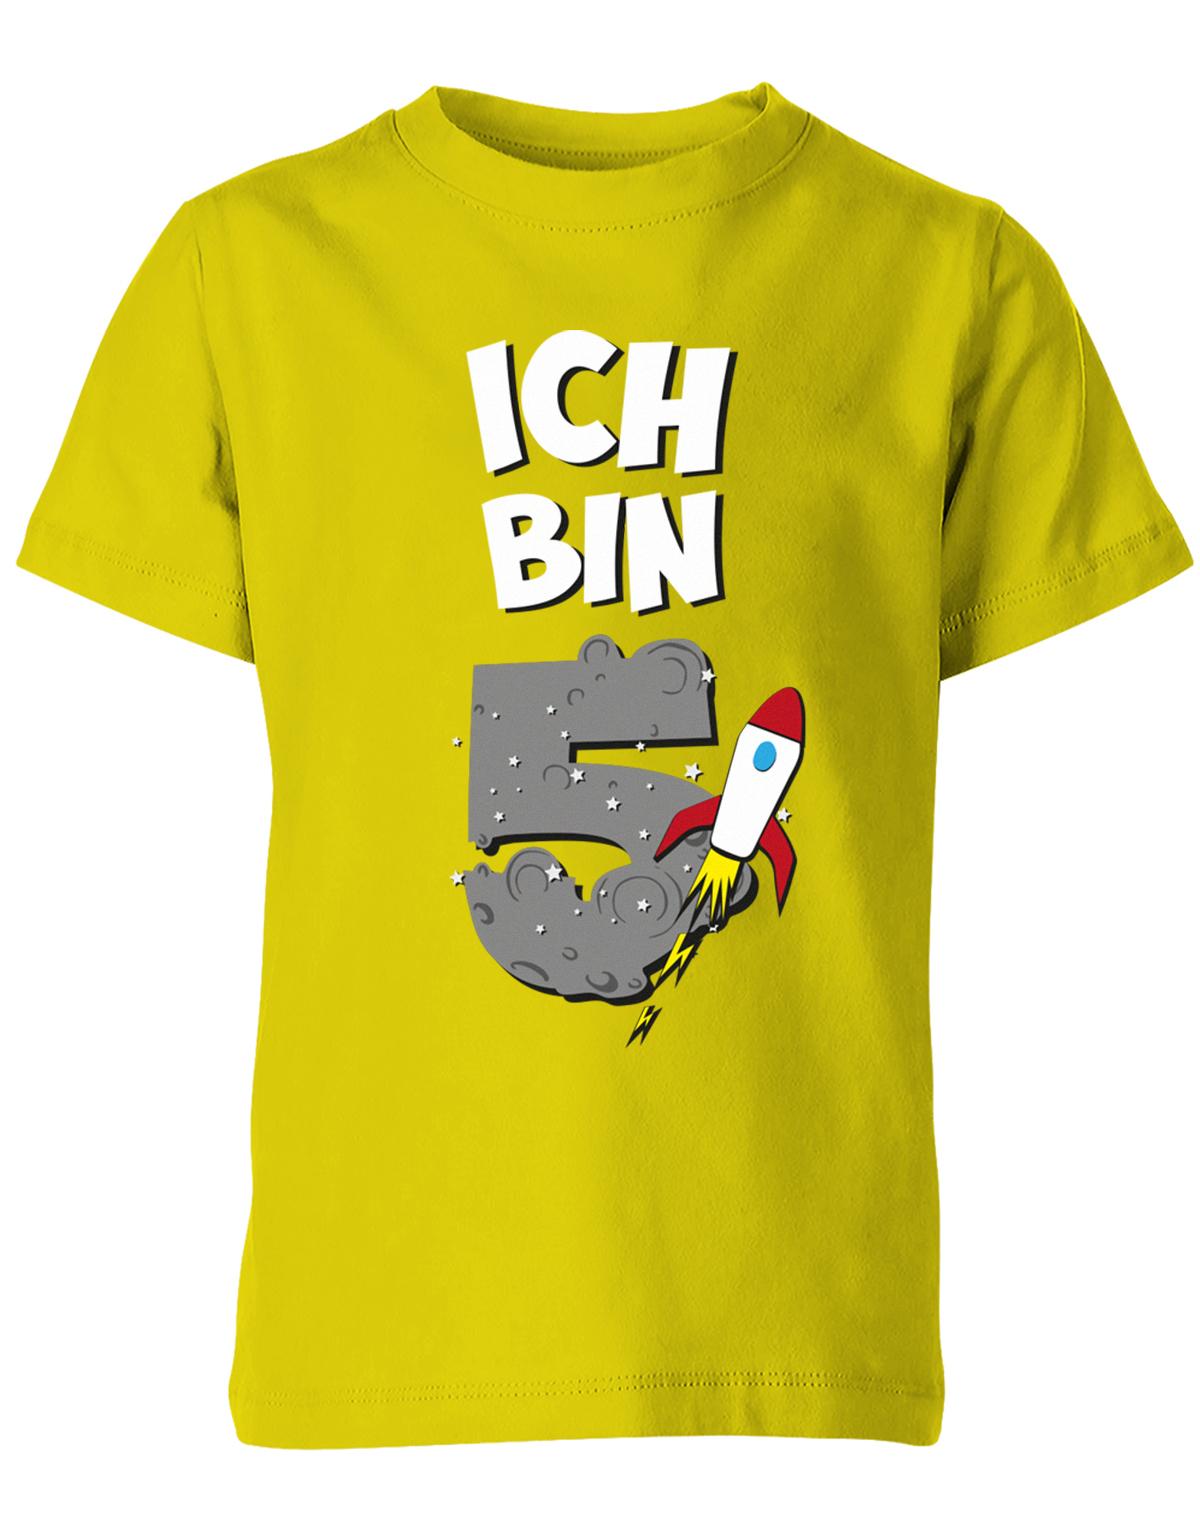 ich-bin-5-weltraum-rakete-planet-geburtstag-kinder-shirt-gelb